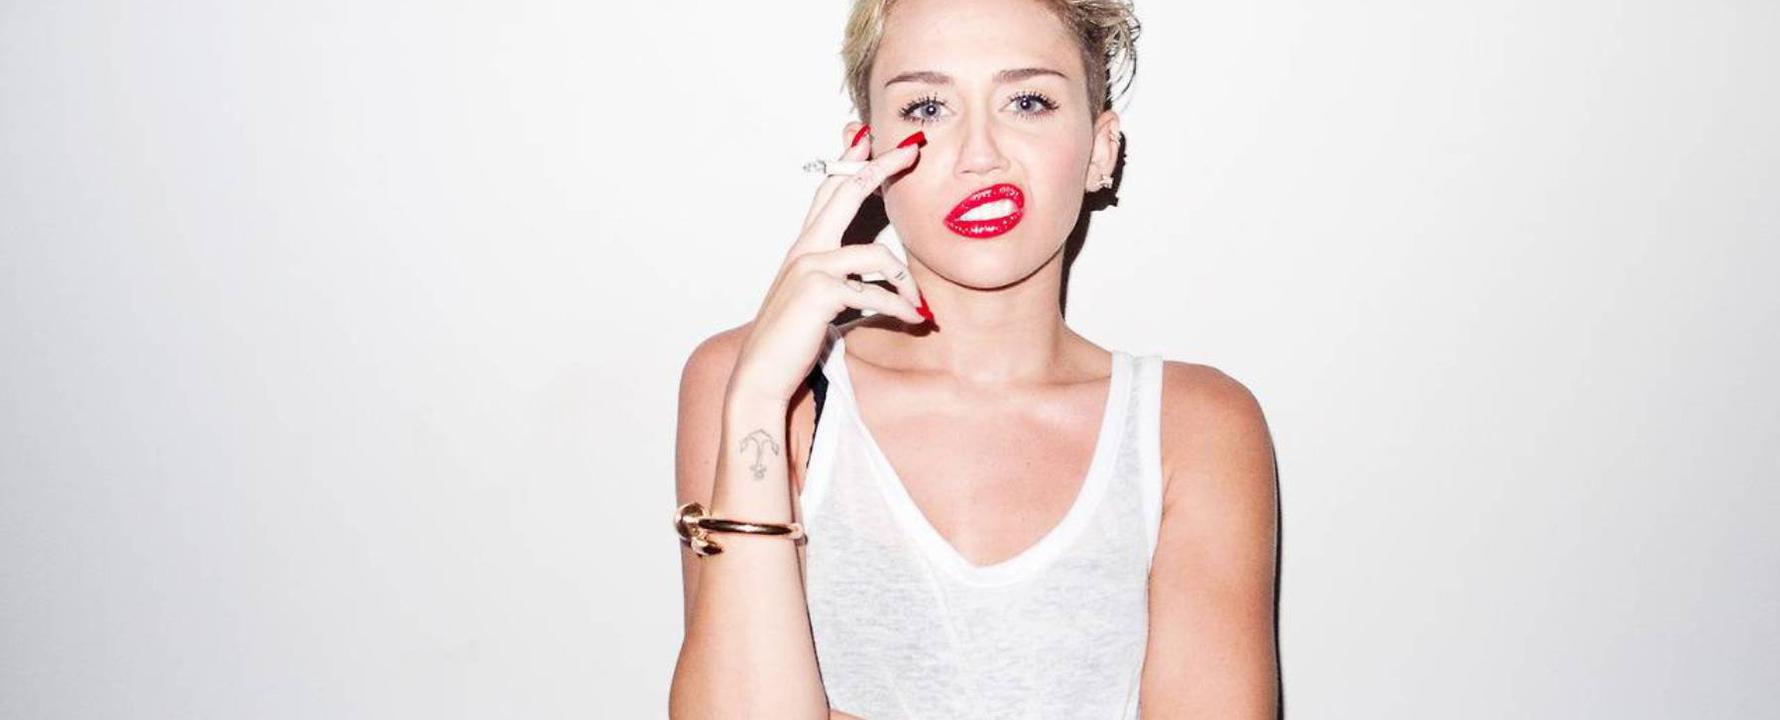 Photographie promotionnelle de Miley Cyrus.